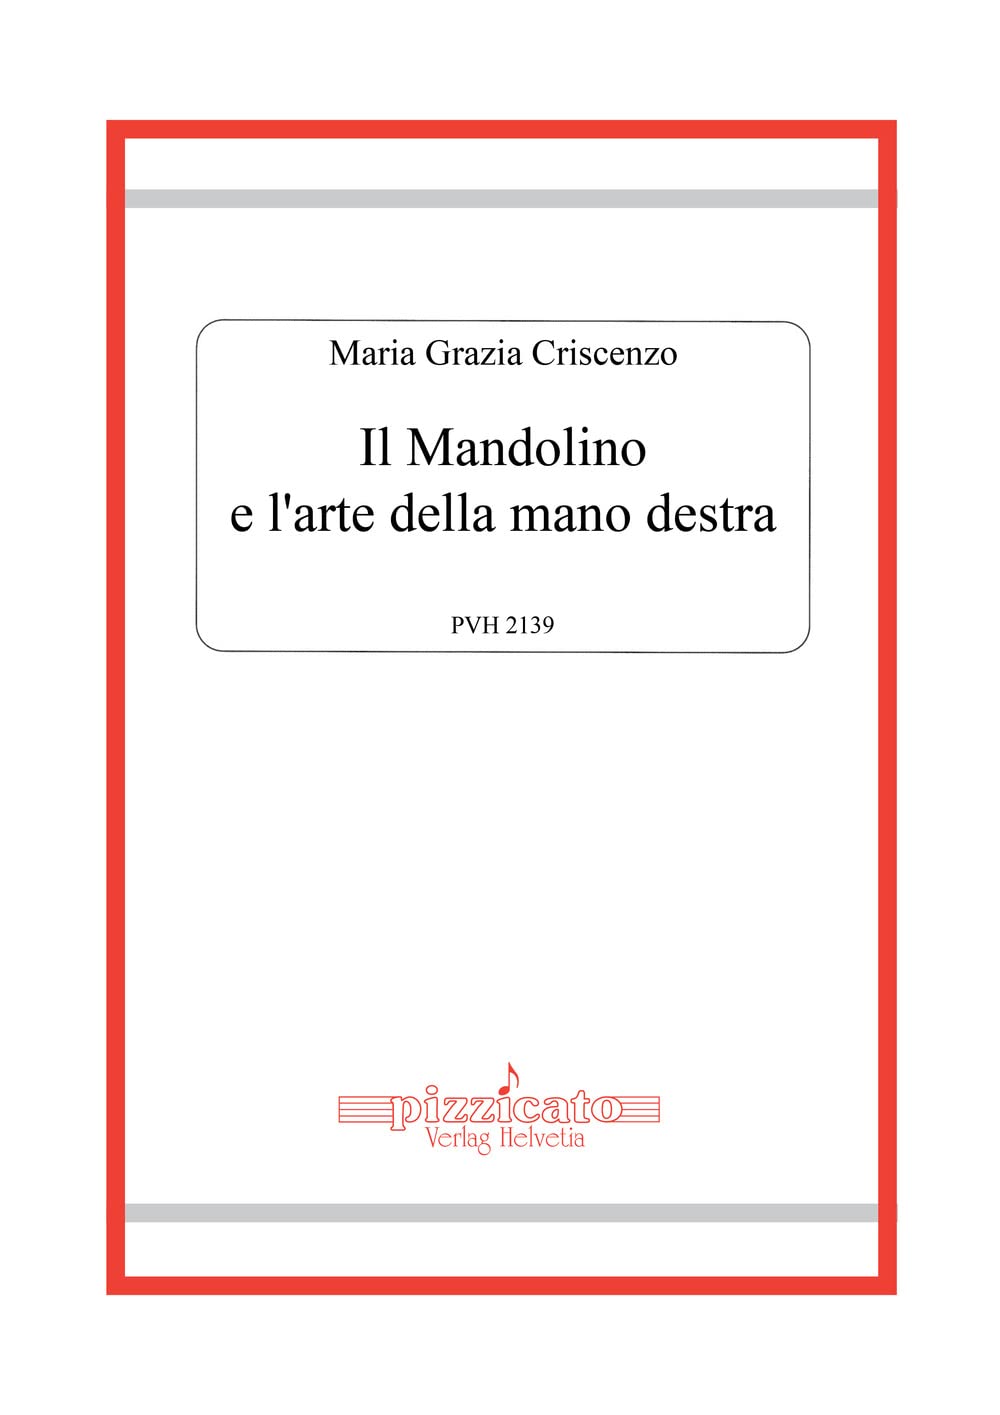 Libri Criscenzo Maria Grazia - Il Mandolino E L'arte Della Mano Destra NUOVO SIGILLATO, EDIZIONE DEL 28/11/2022 SUBITO DISPONIBILE